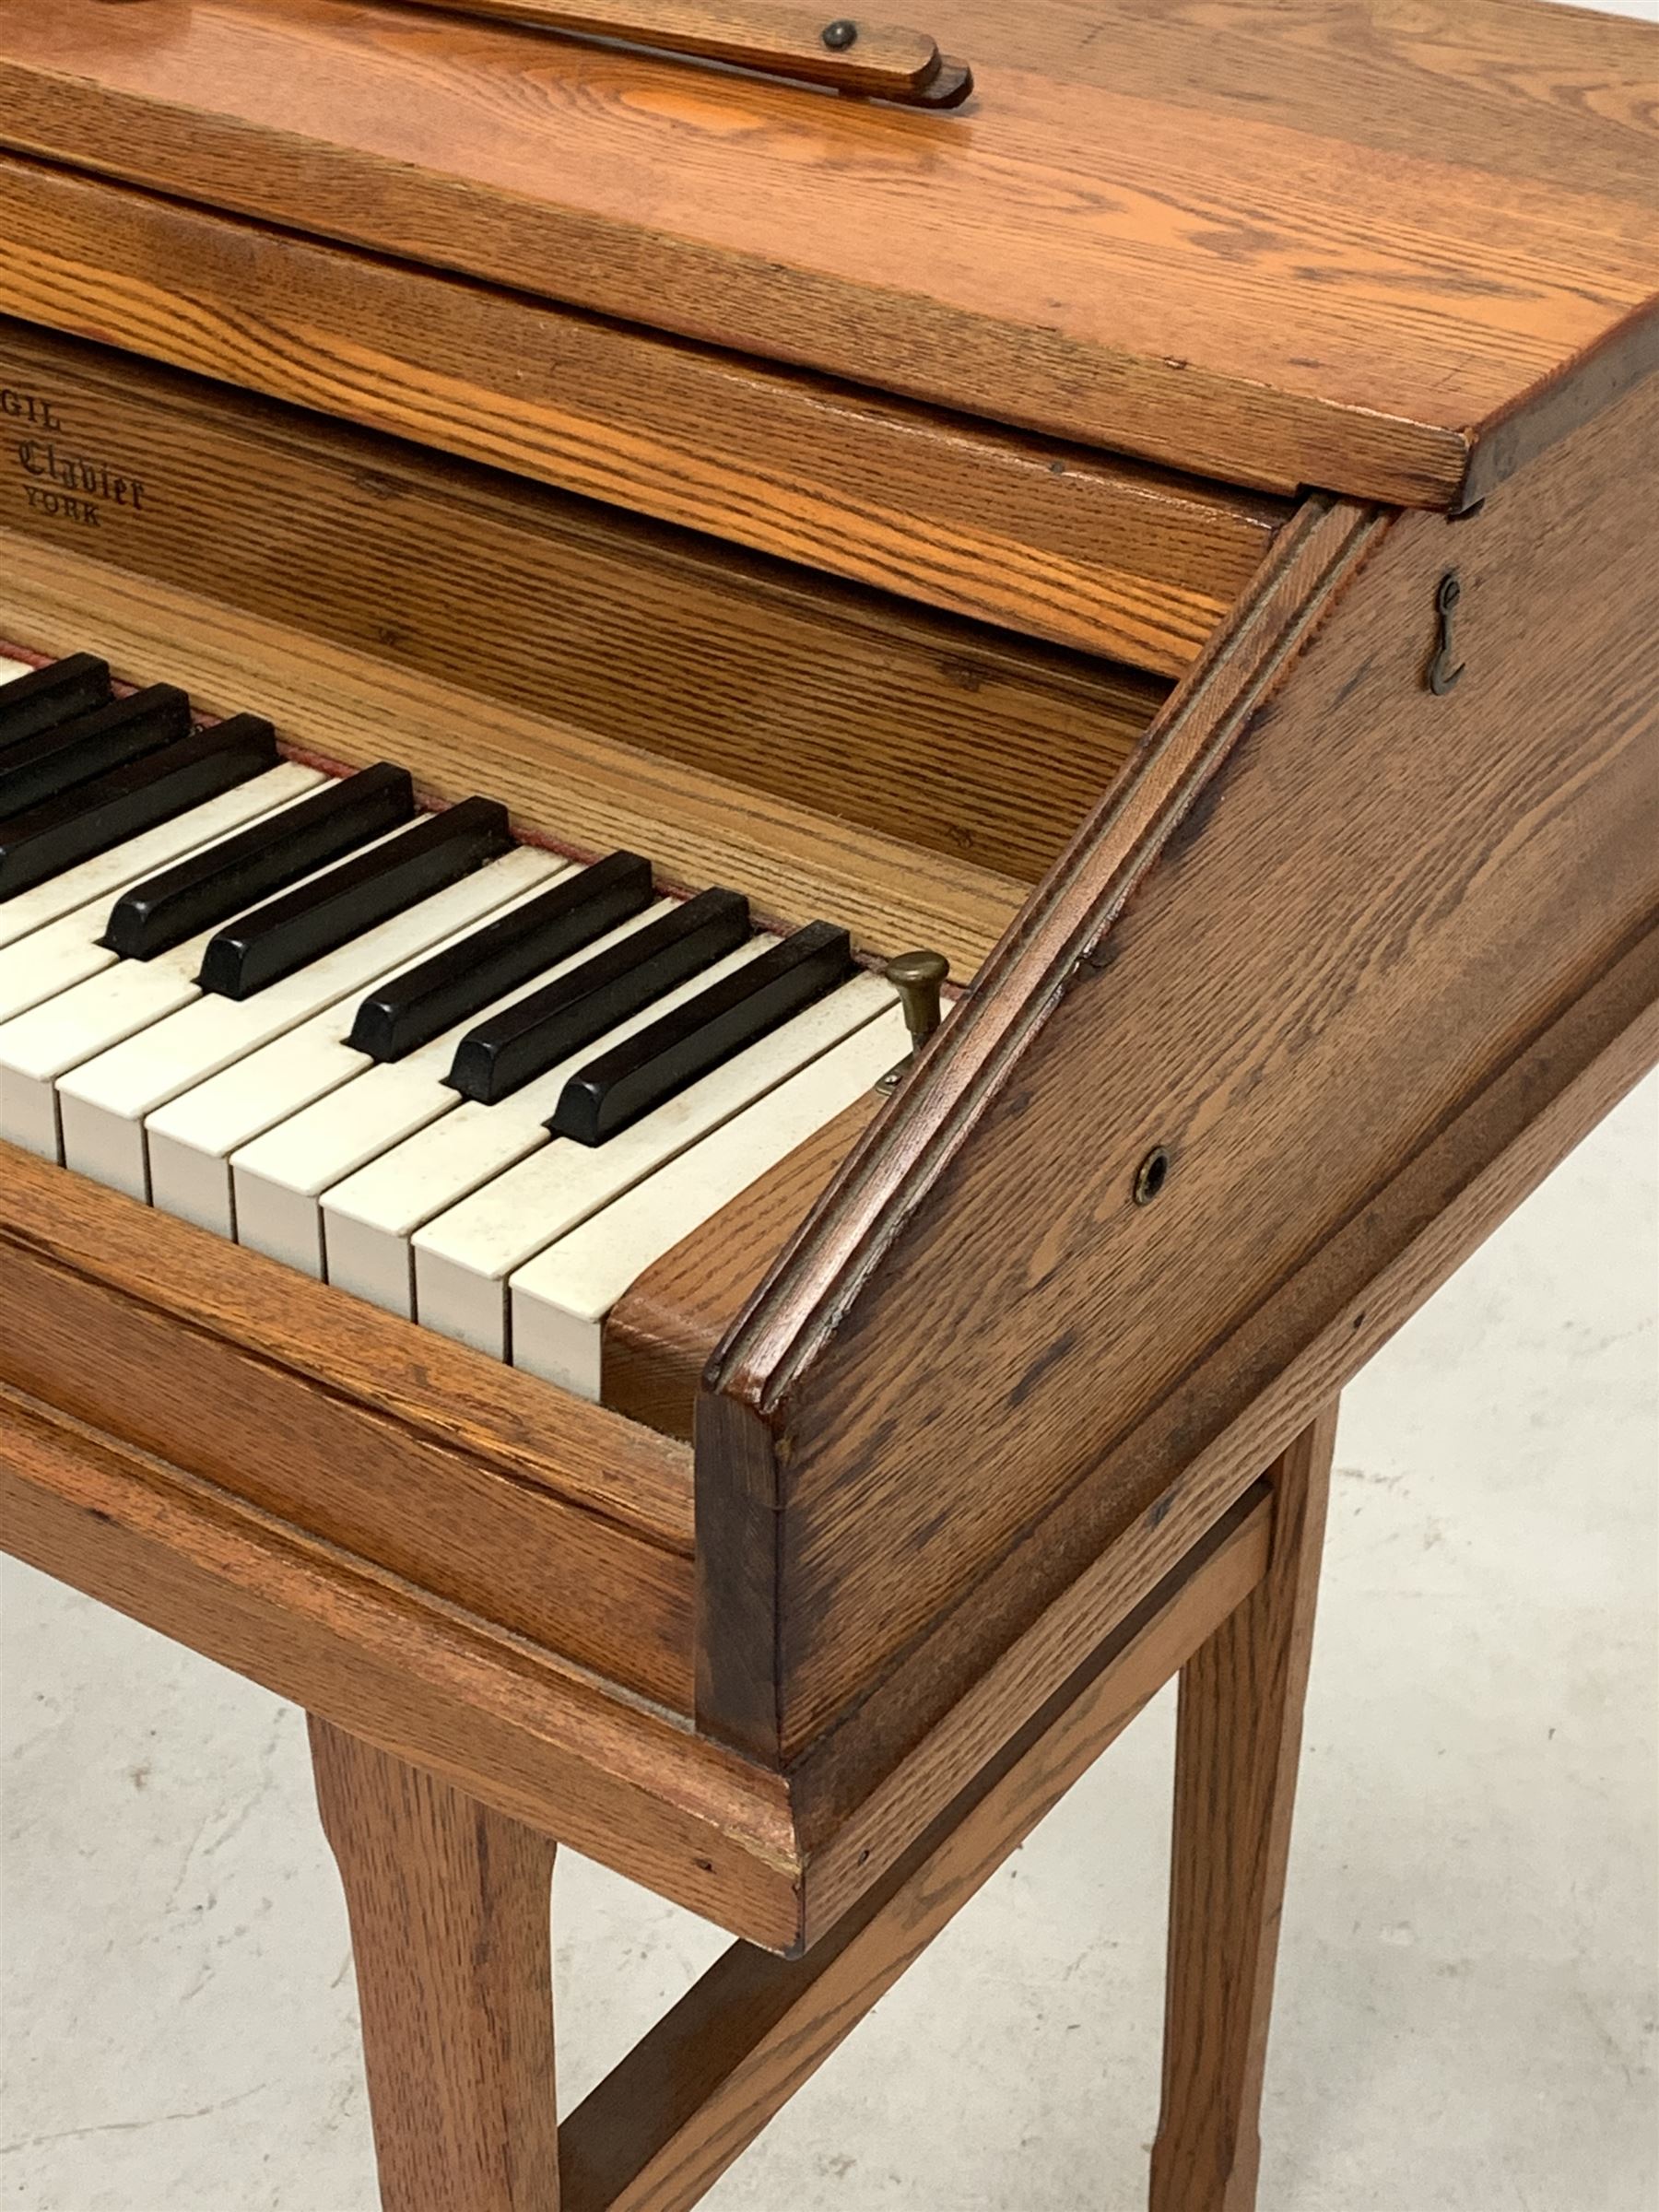 'Virgil Practice Clavier' - early 20th century dummy keyboard in oak case with folding trestle legs - Image 2 of 5